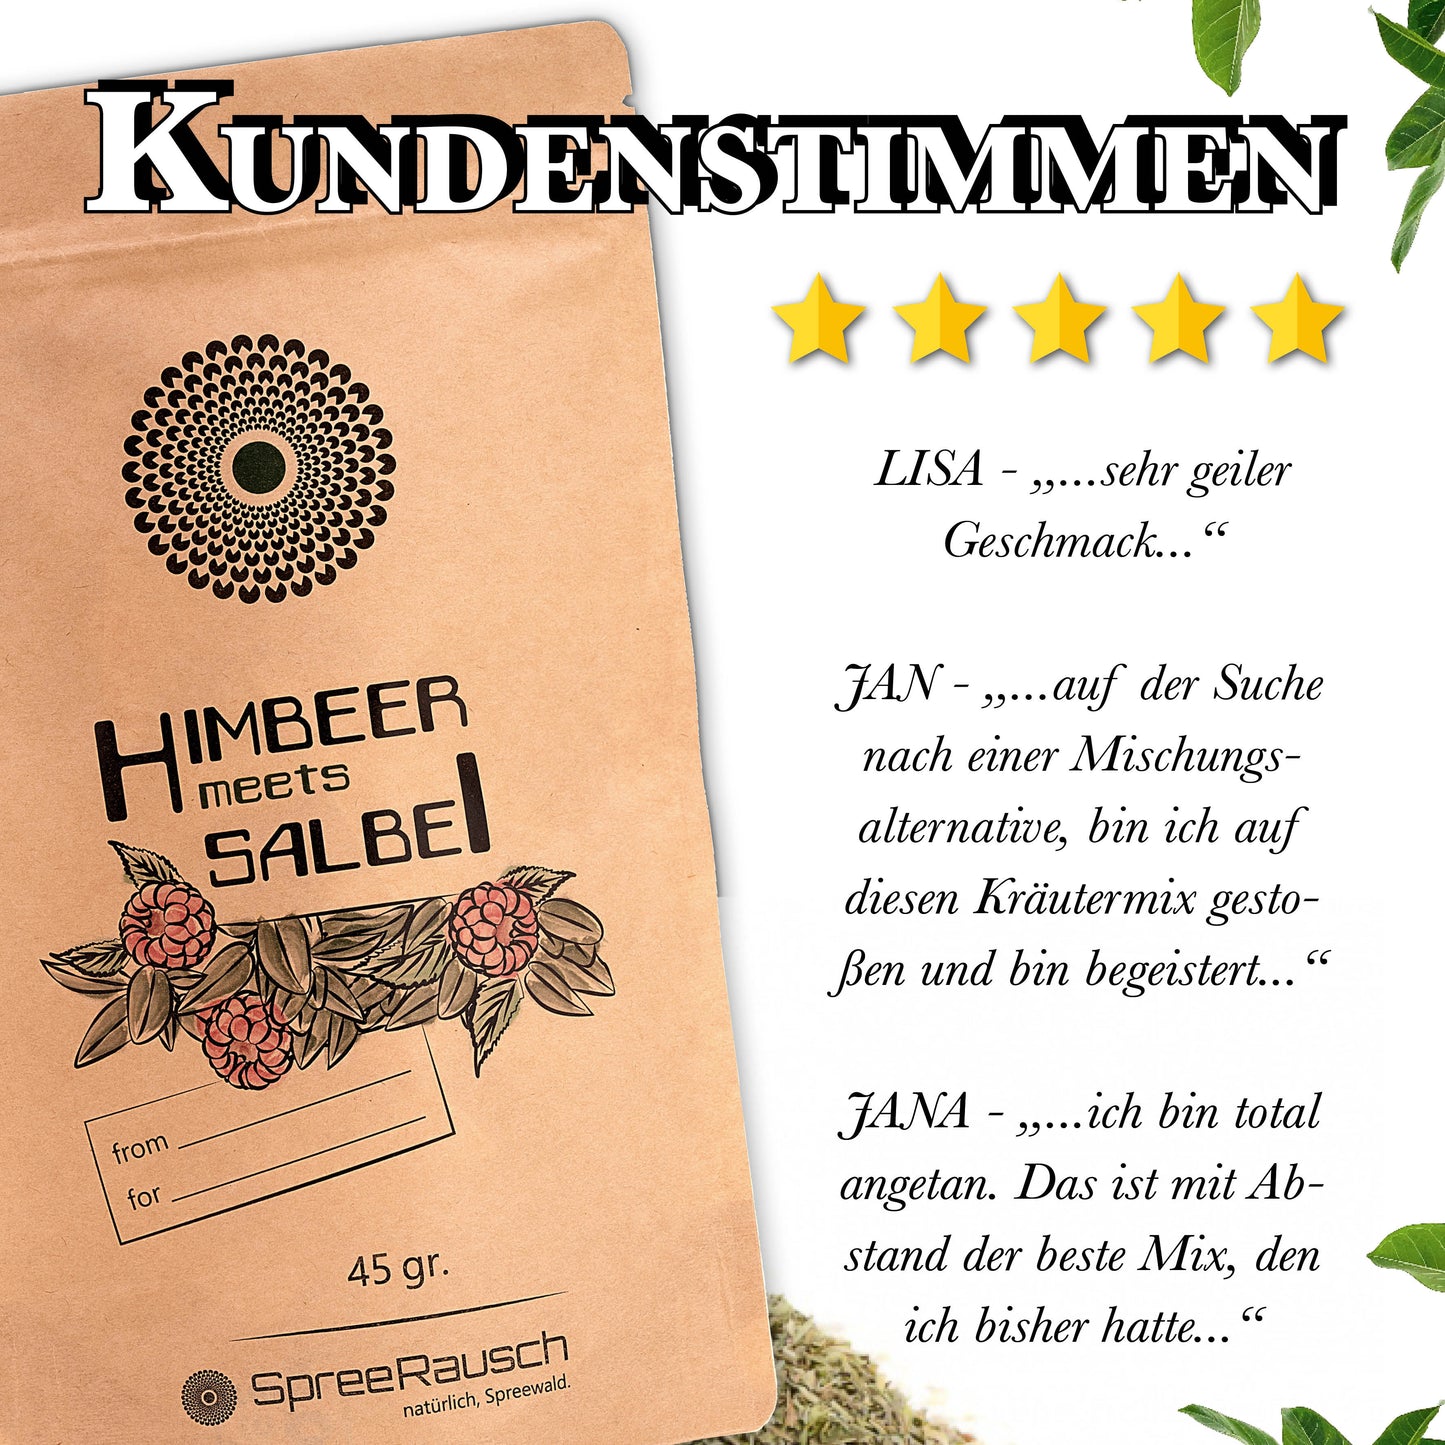 Himbeer - Salbei Teemischung von SpreeRausch, Die ORIGINAL Kräutermischung für viele Verwendungsmöglichkeiten